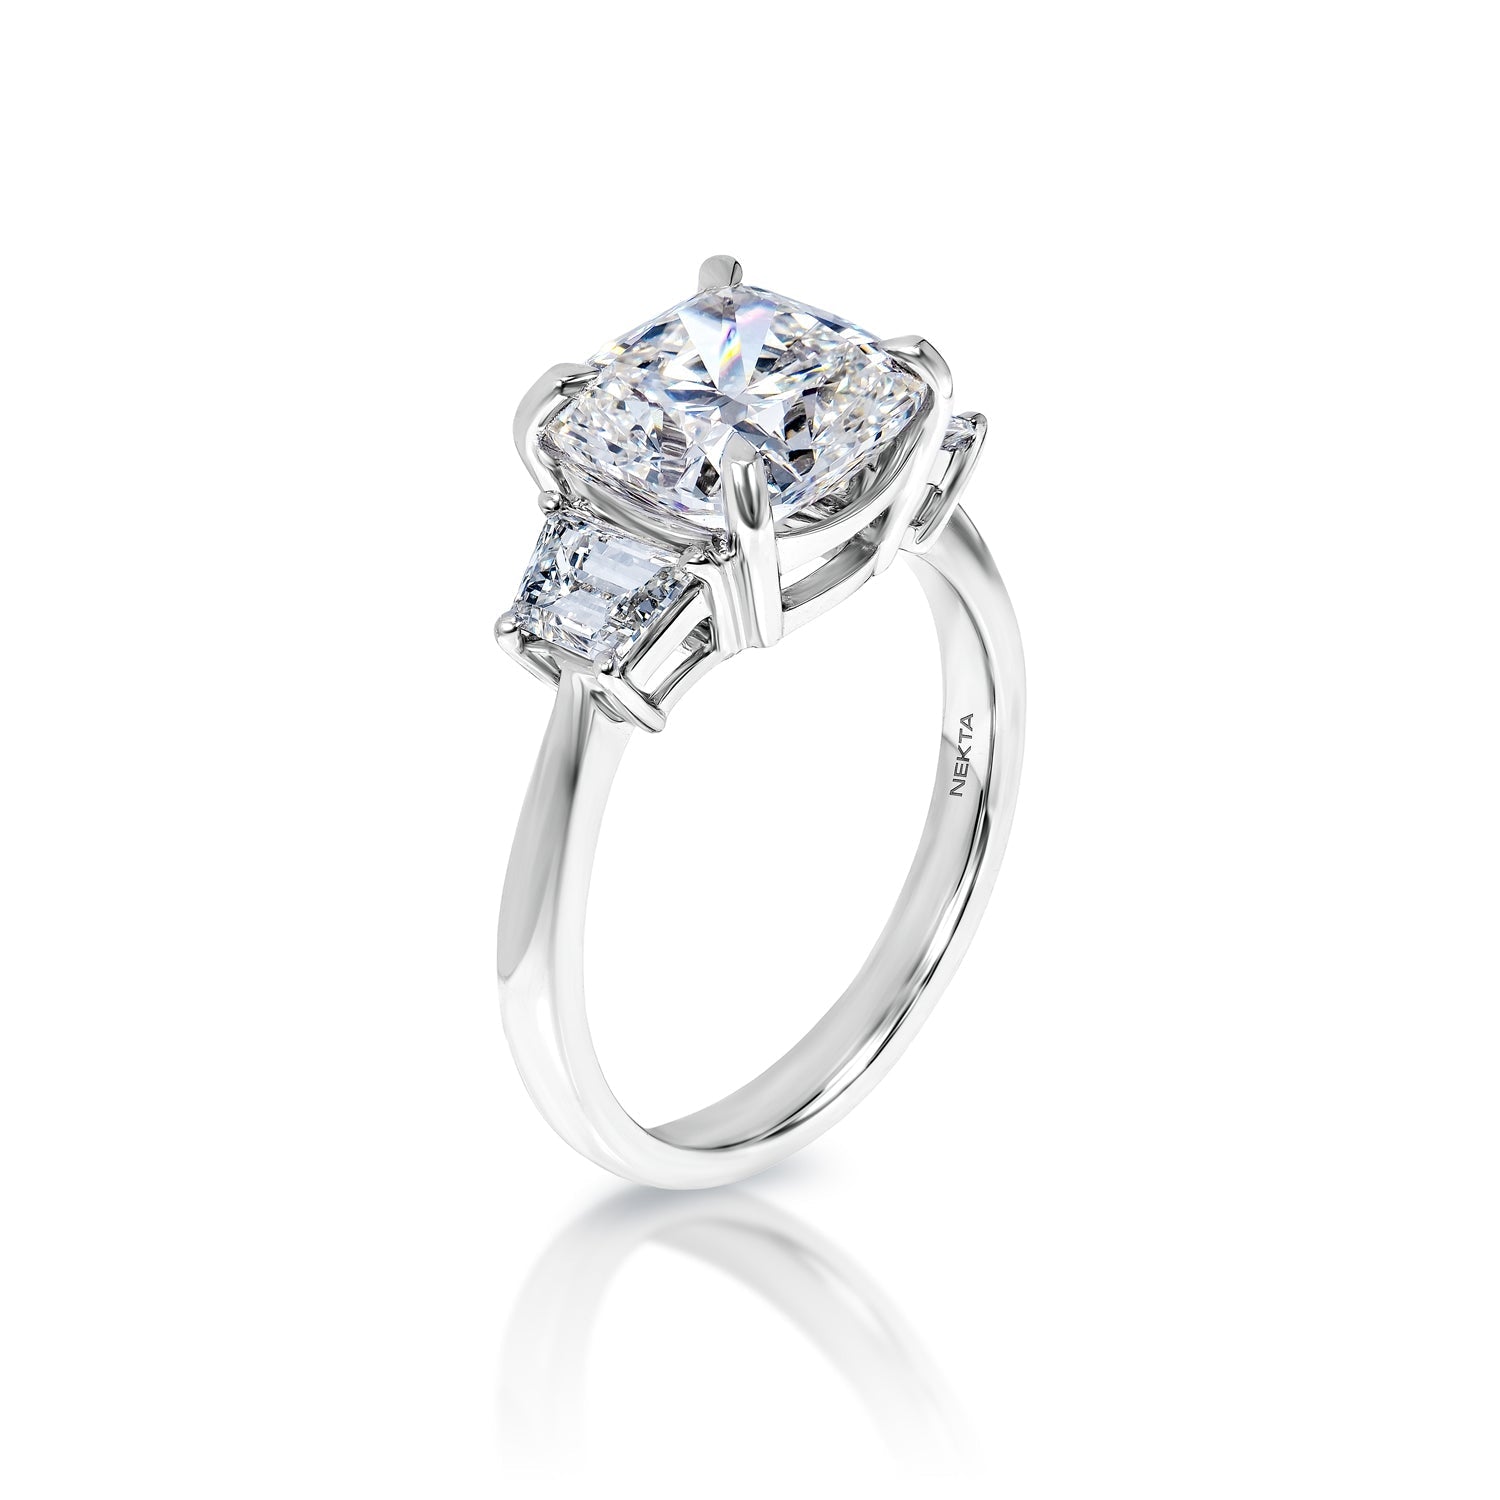 LARA 4 Carat Cushion Cut Lab Grown Diamond Engagement Ring. IGI Certified Side View